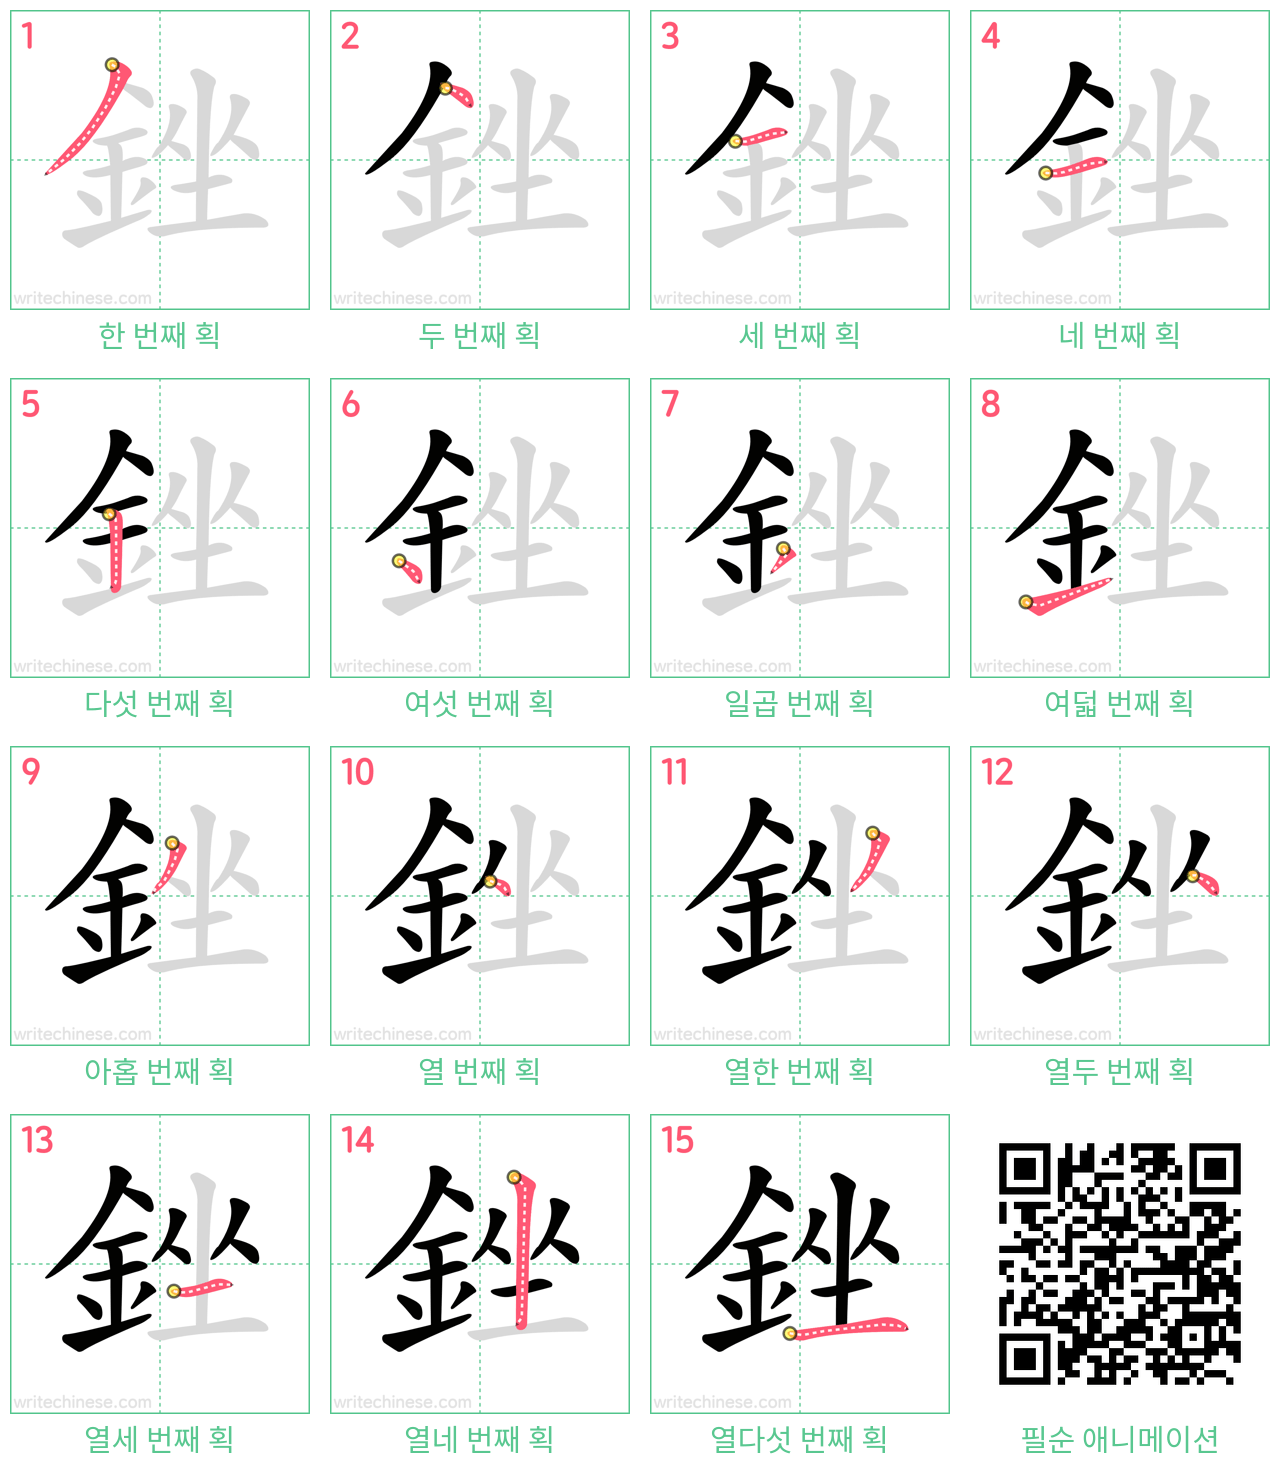 銼 step-by-step stroke order diagrams